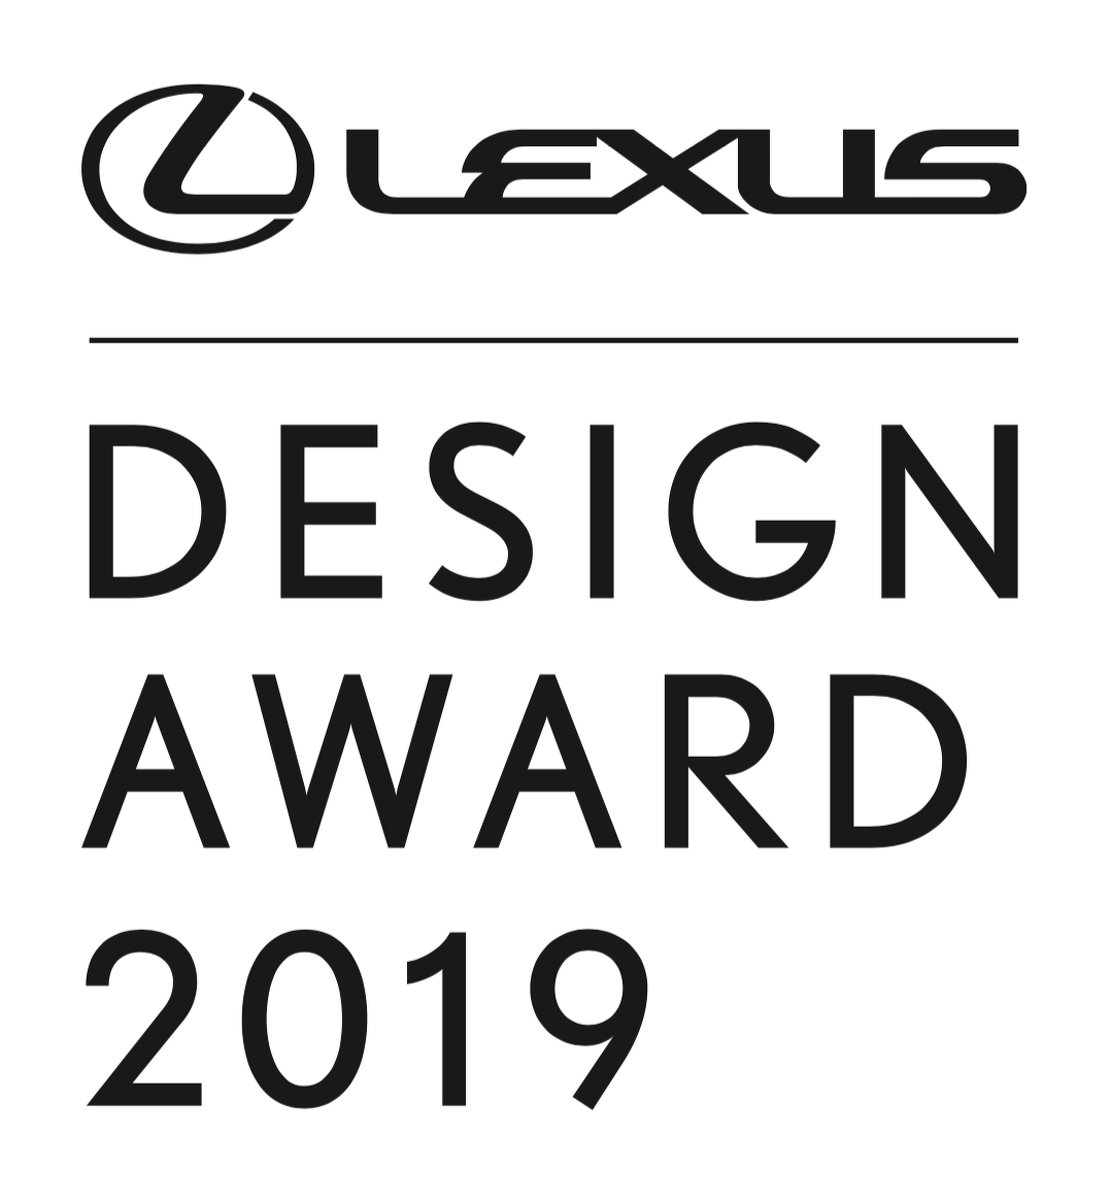 Lexus Design Award 2019